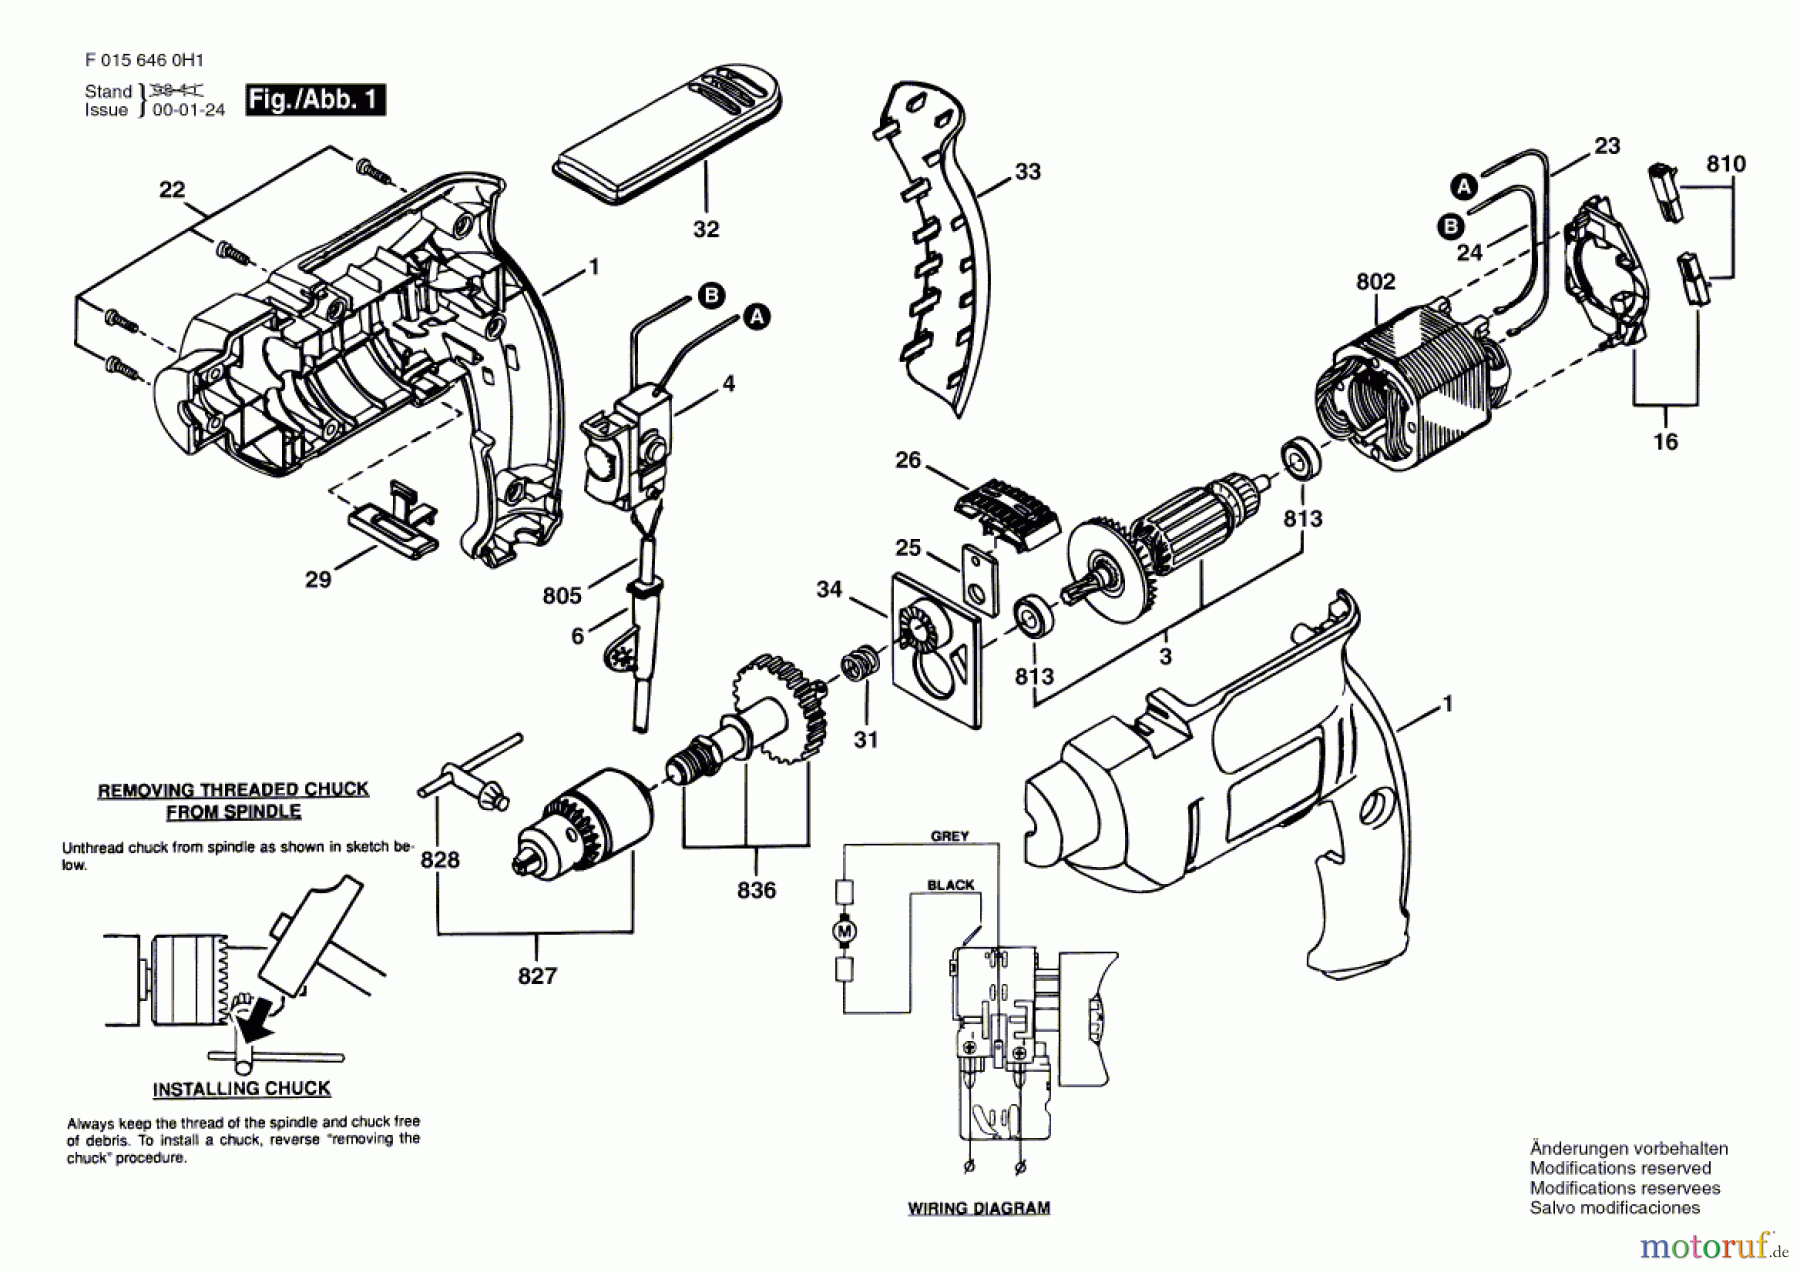  Bosch Werkzeug Ratsche 6460 Seite 1